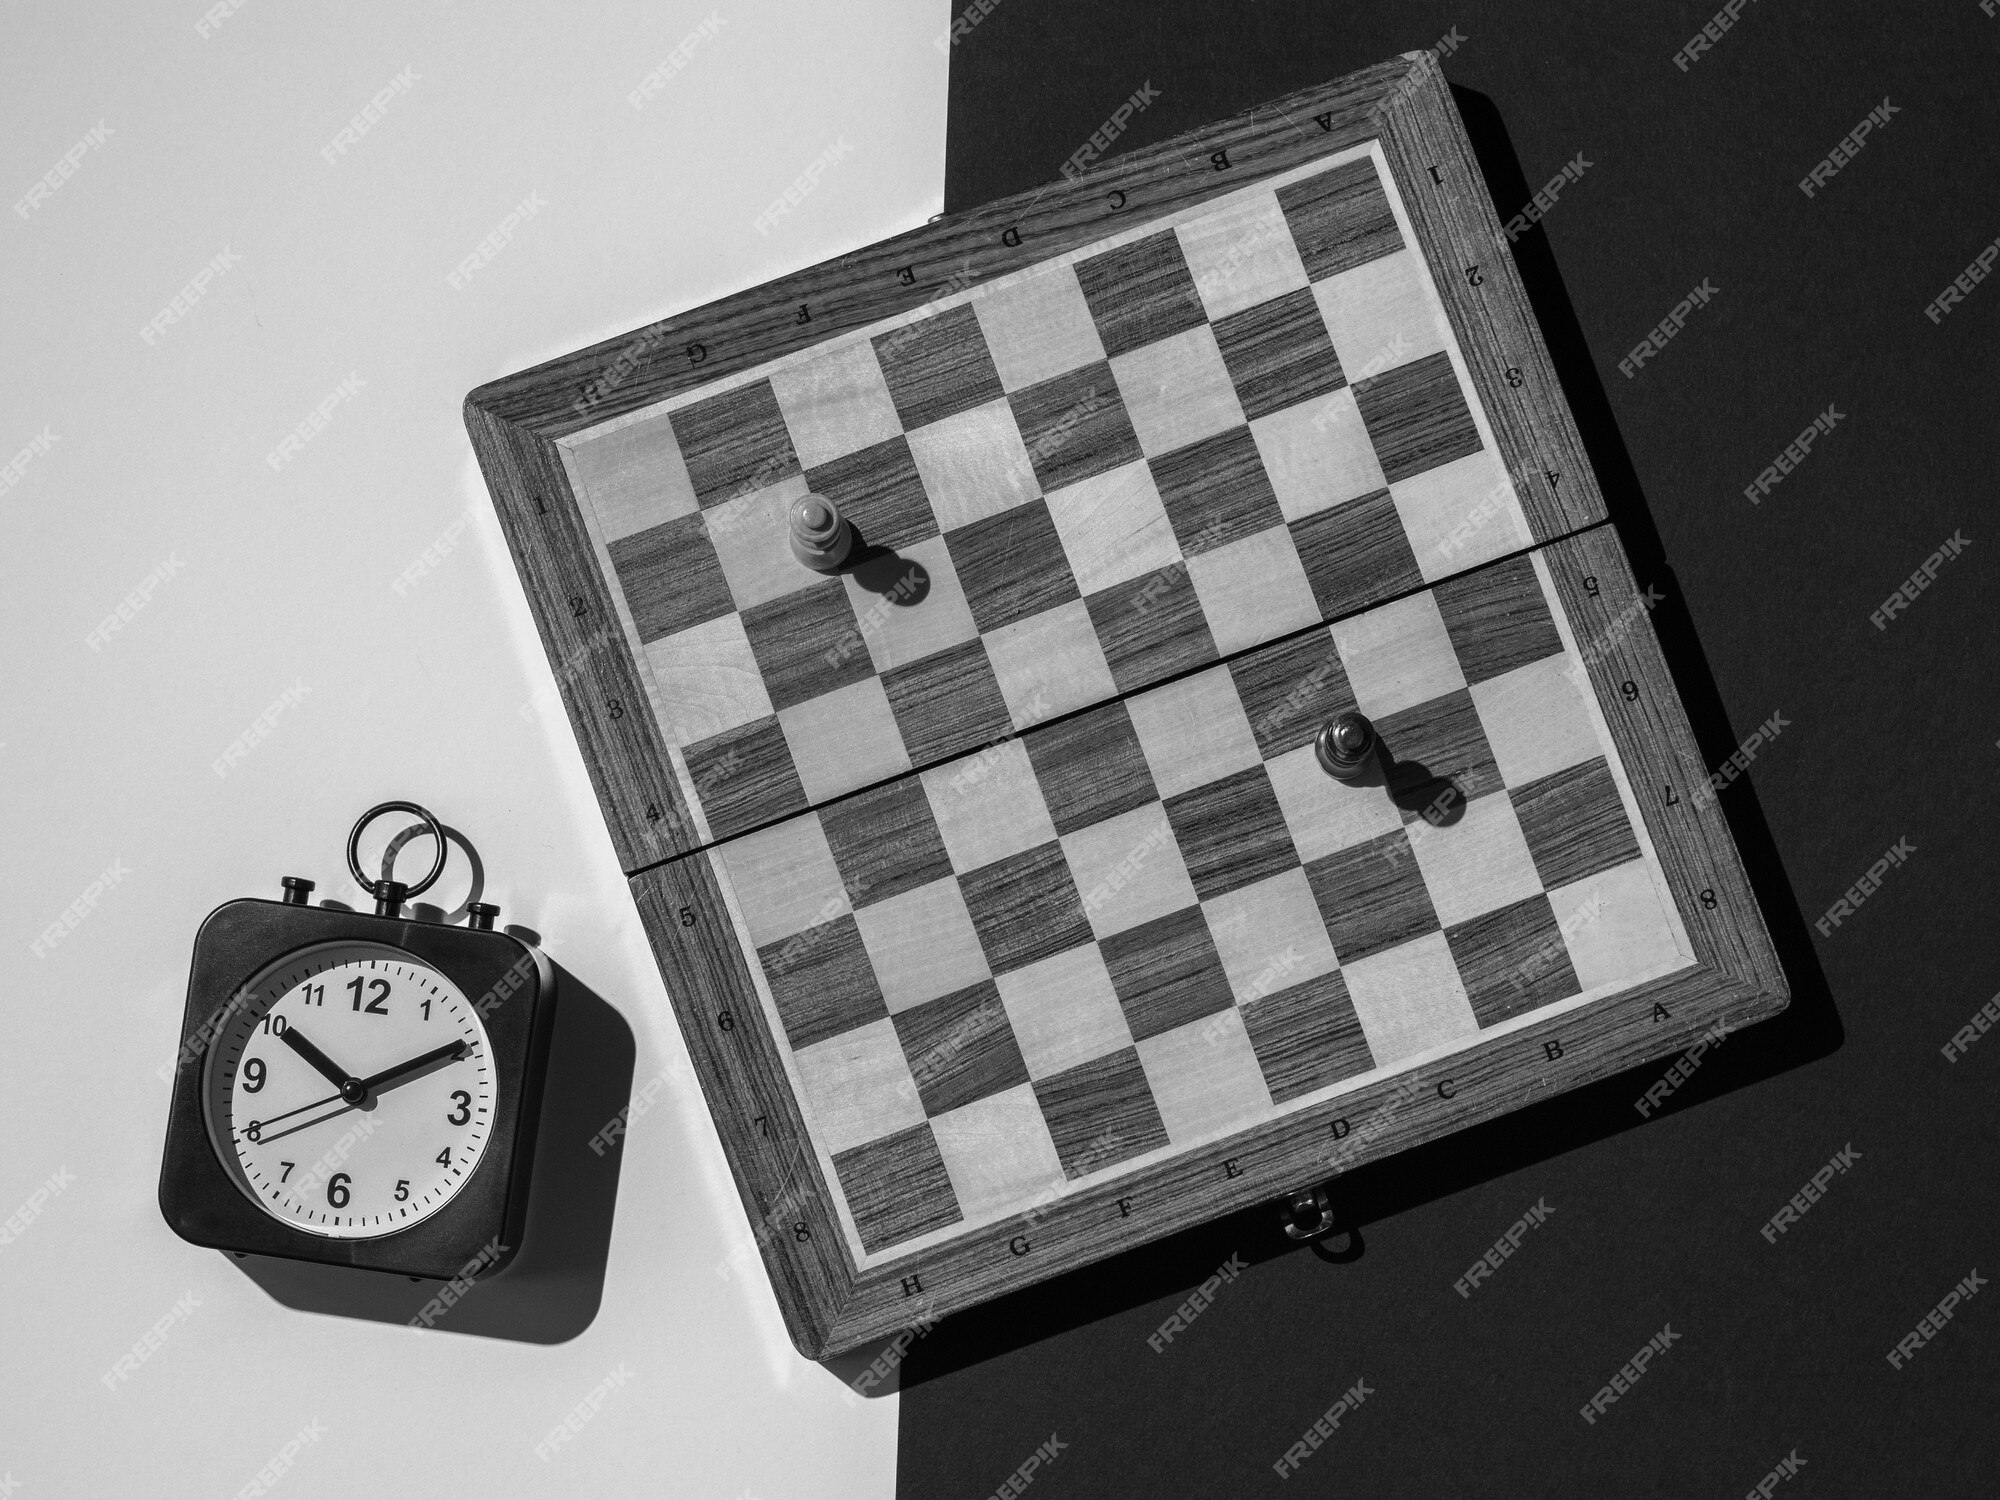 Xadrez com tabuleiro e relógio de xadrez em um fundo branco